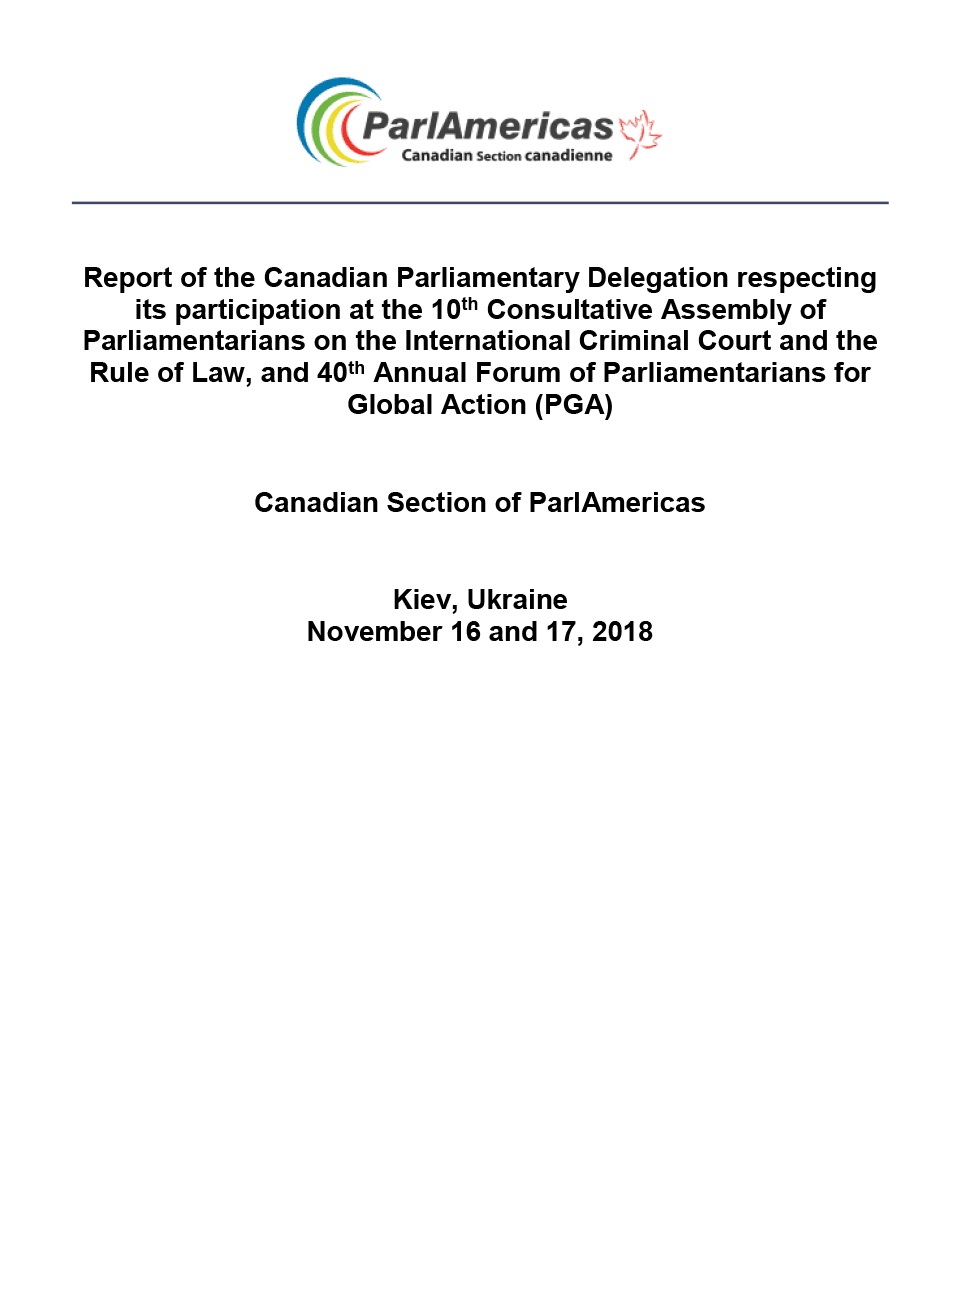 Informe de la Delegación Parlamentaria Canadiense sobre su participación en la 10ª Asamblea Consultiva de Parlamentarios sobre la Corte Penal Internacional y el Estado de Derecho